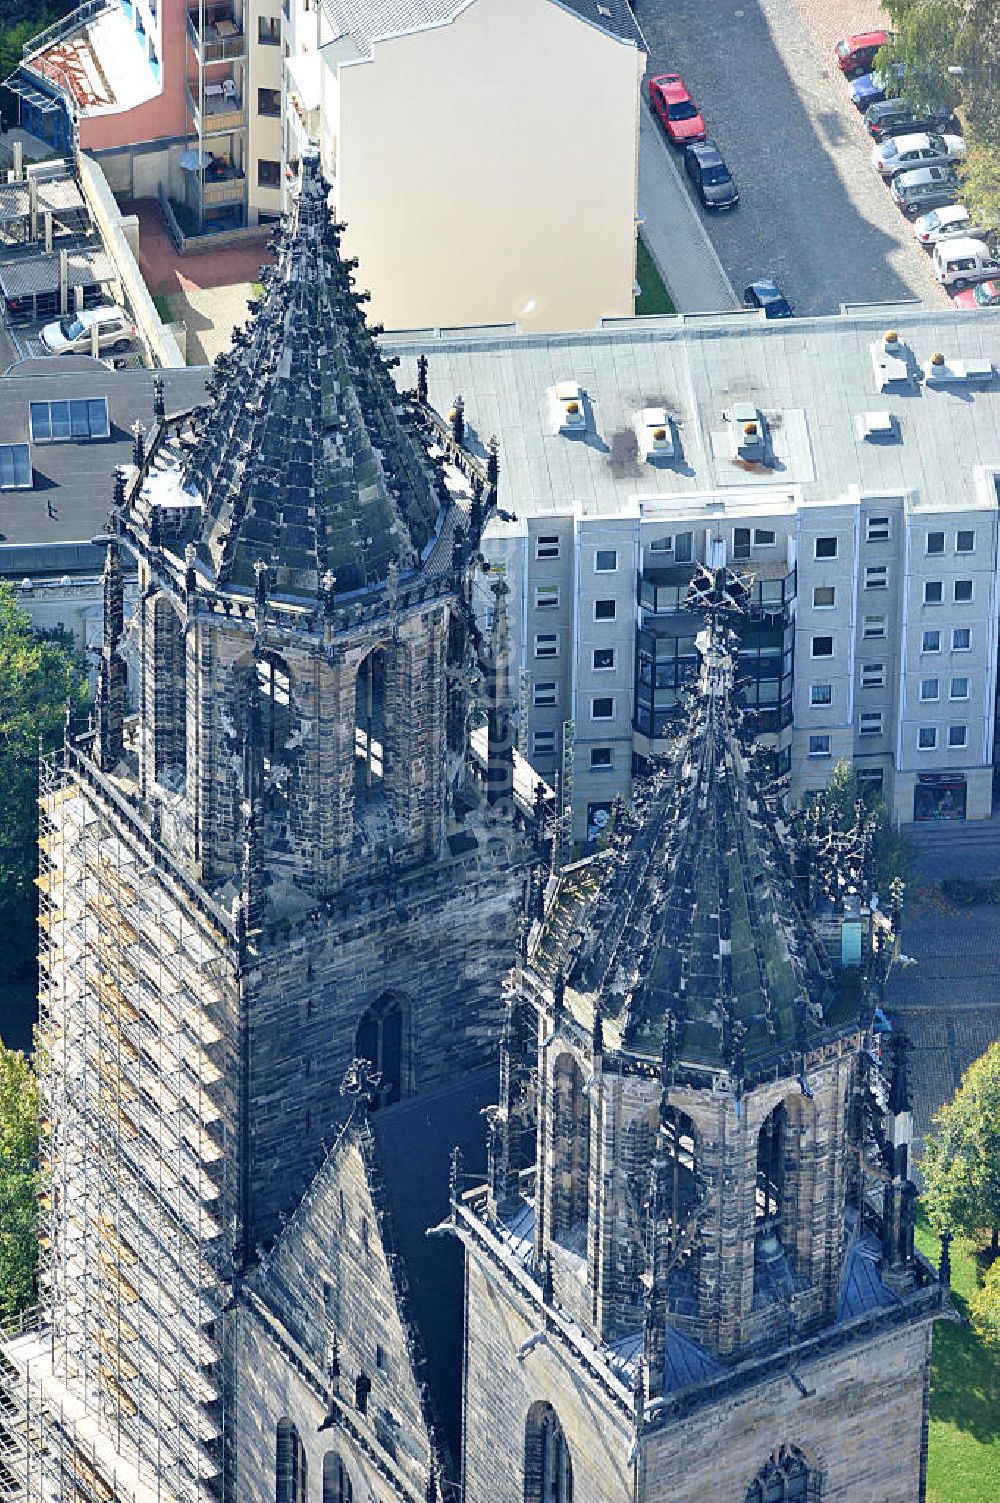 Magdeburg von oben - Restaurierung der Türme des Magdeburger Doms